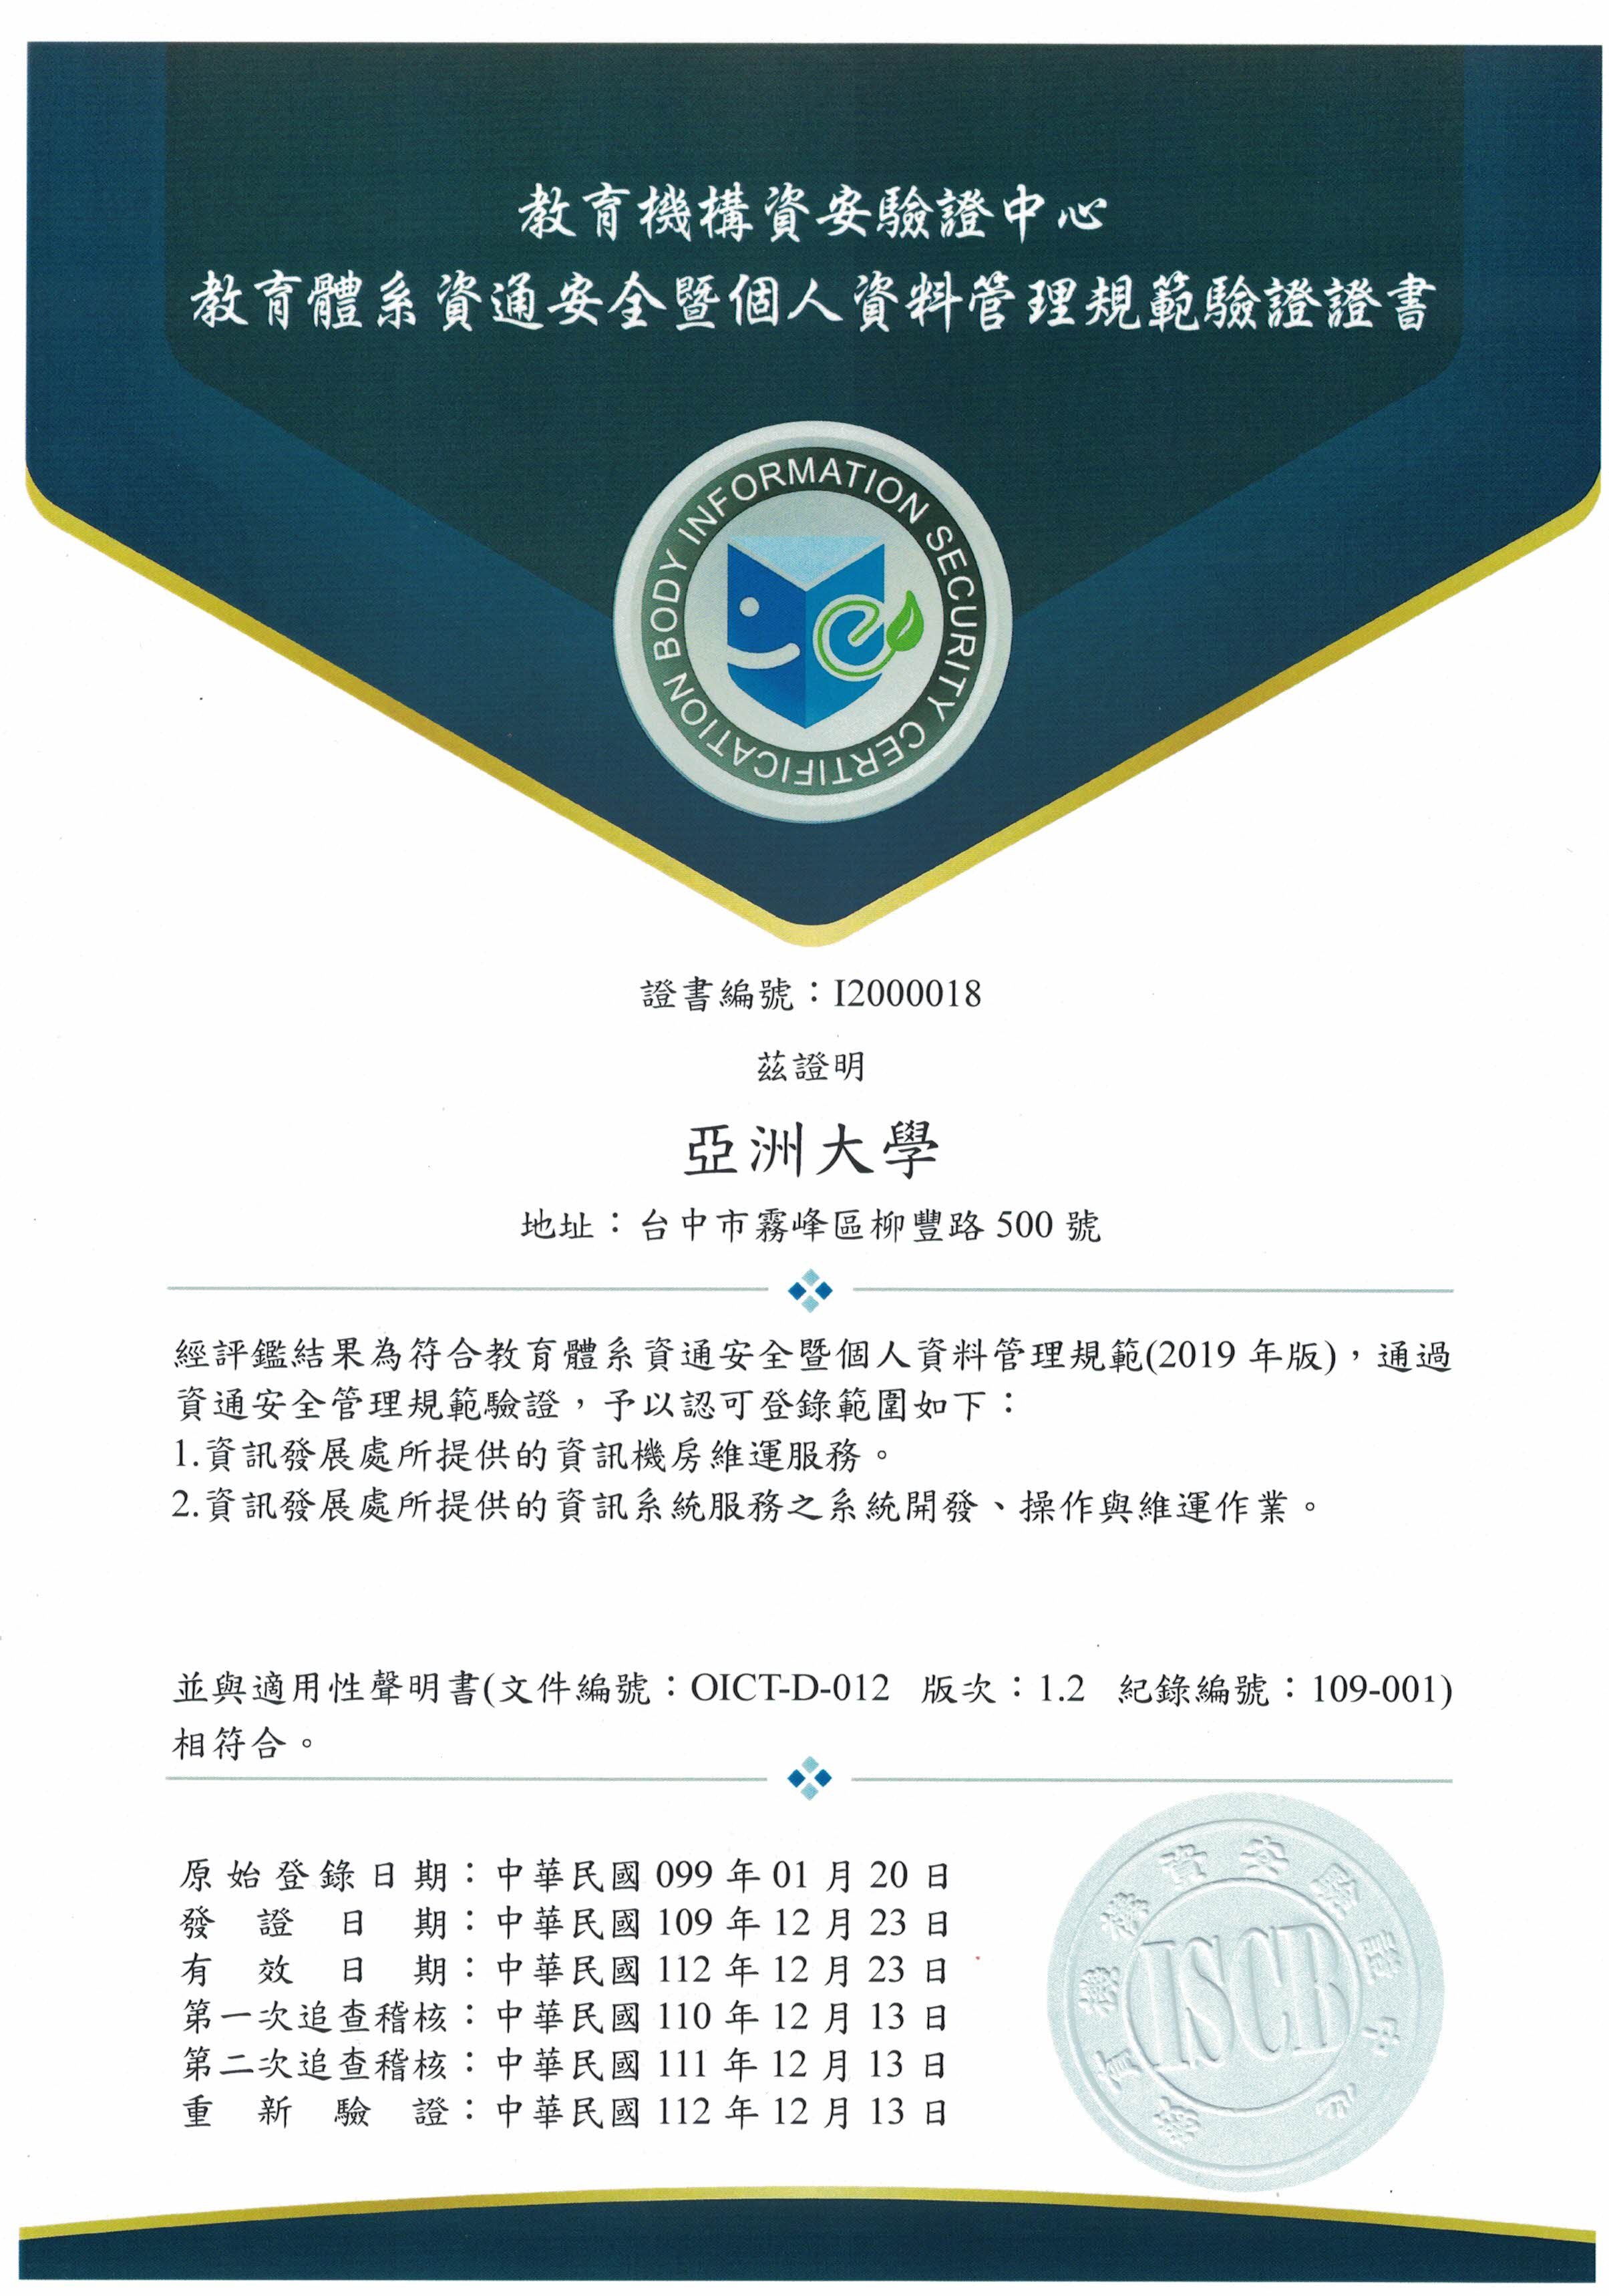 亚洲大学资通安全管理验证通过证书